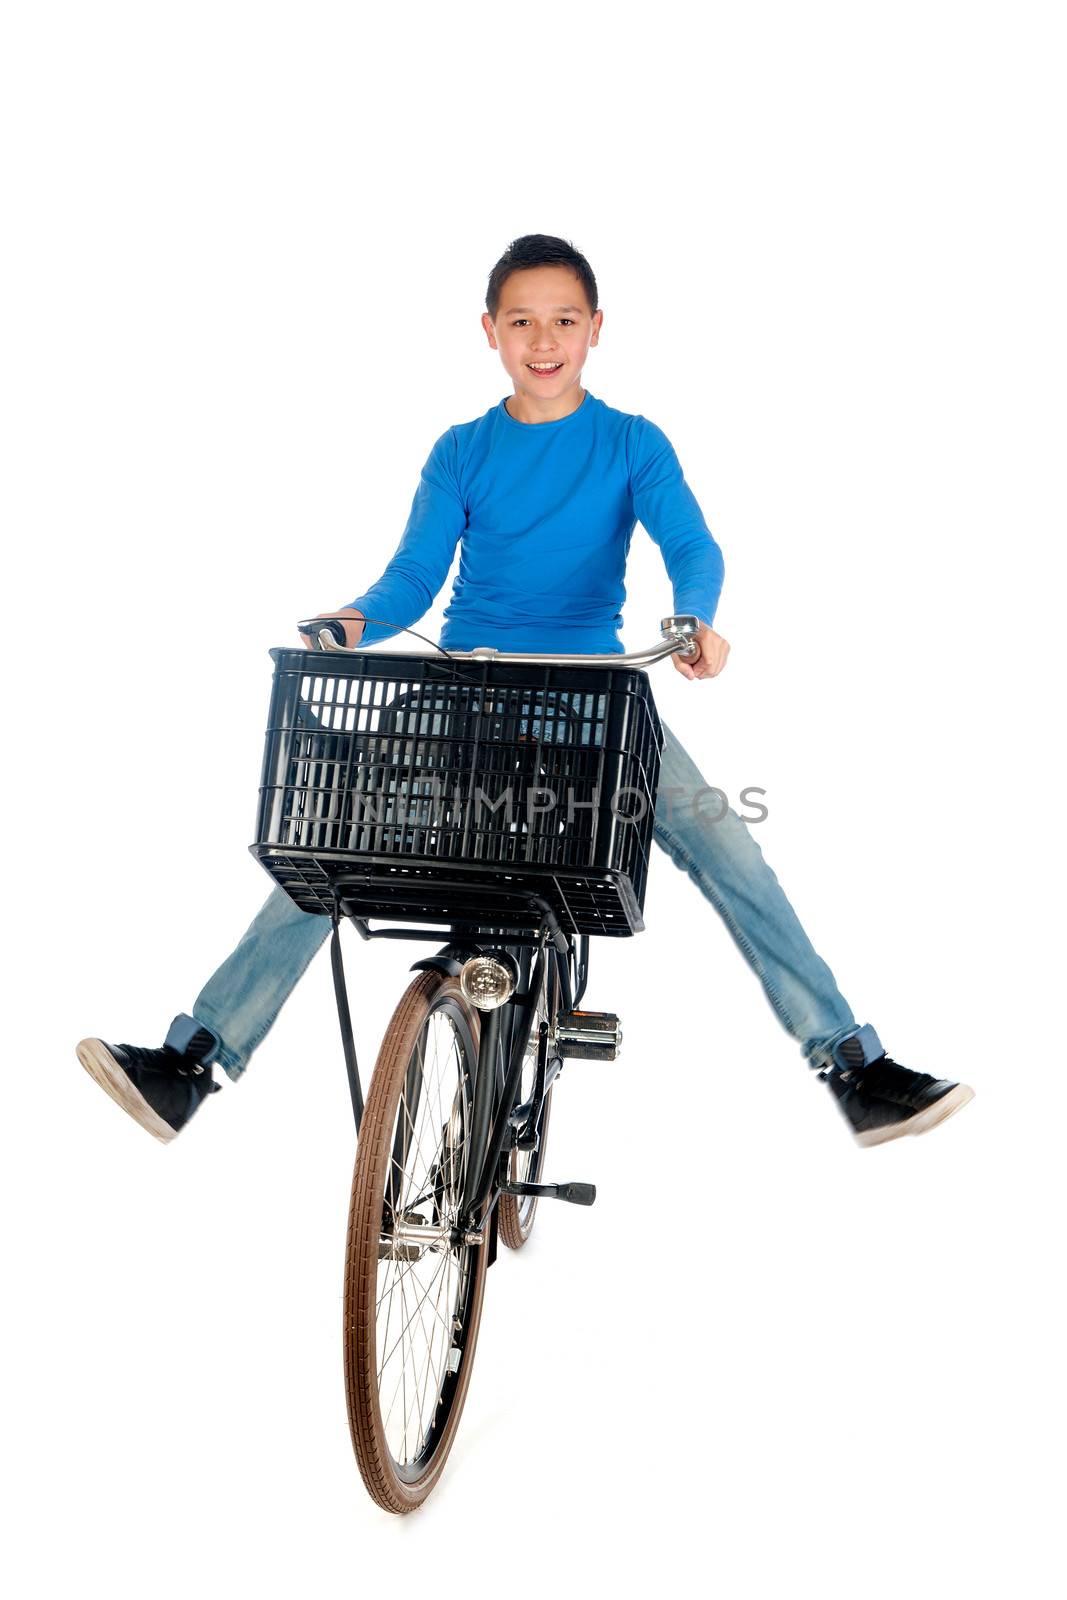 a teenage boy on a bike, on a white background